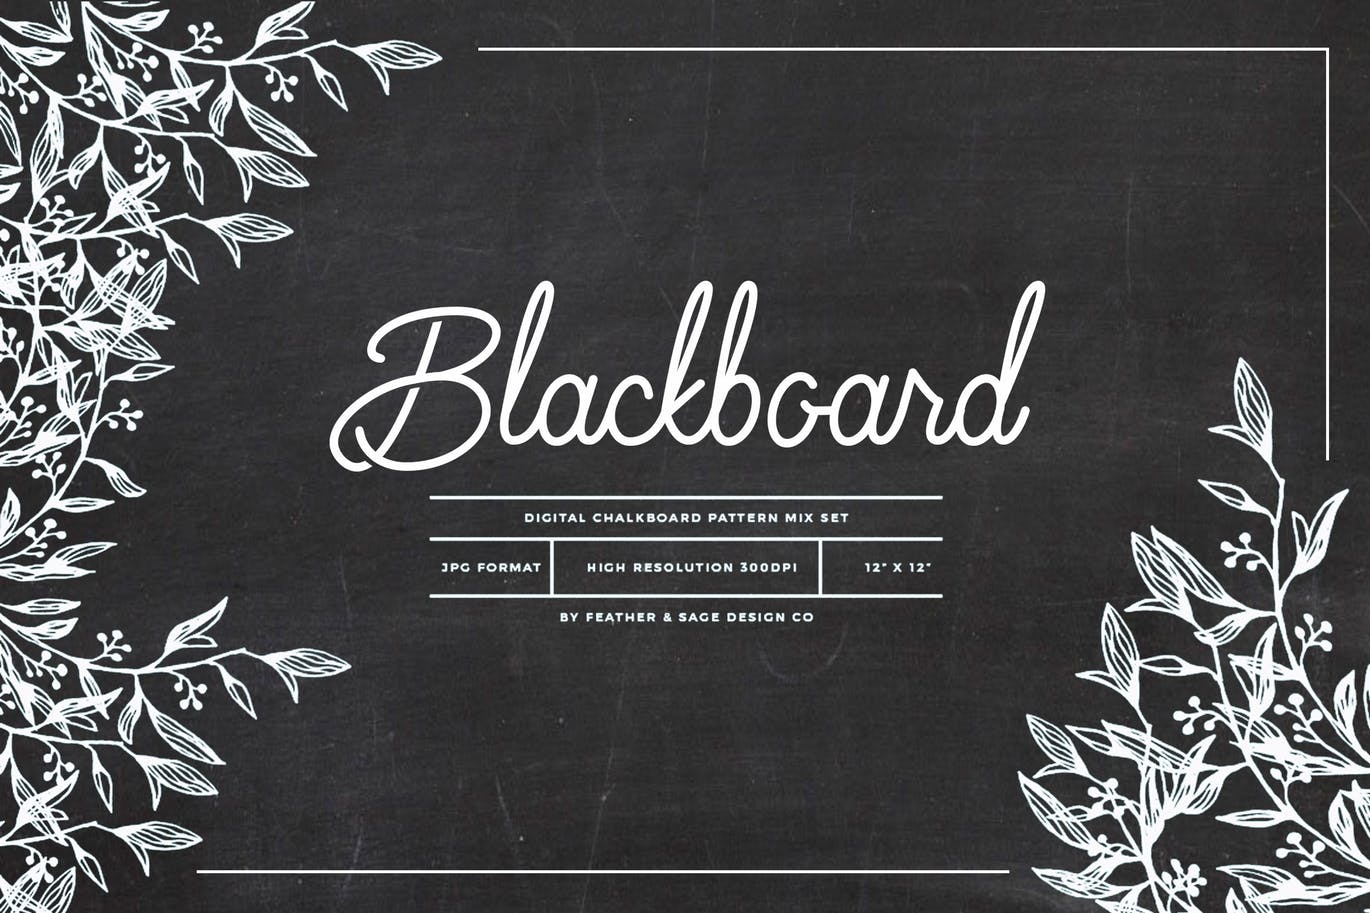 A blackboard patterns set